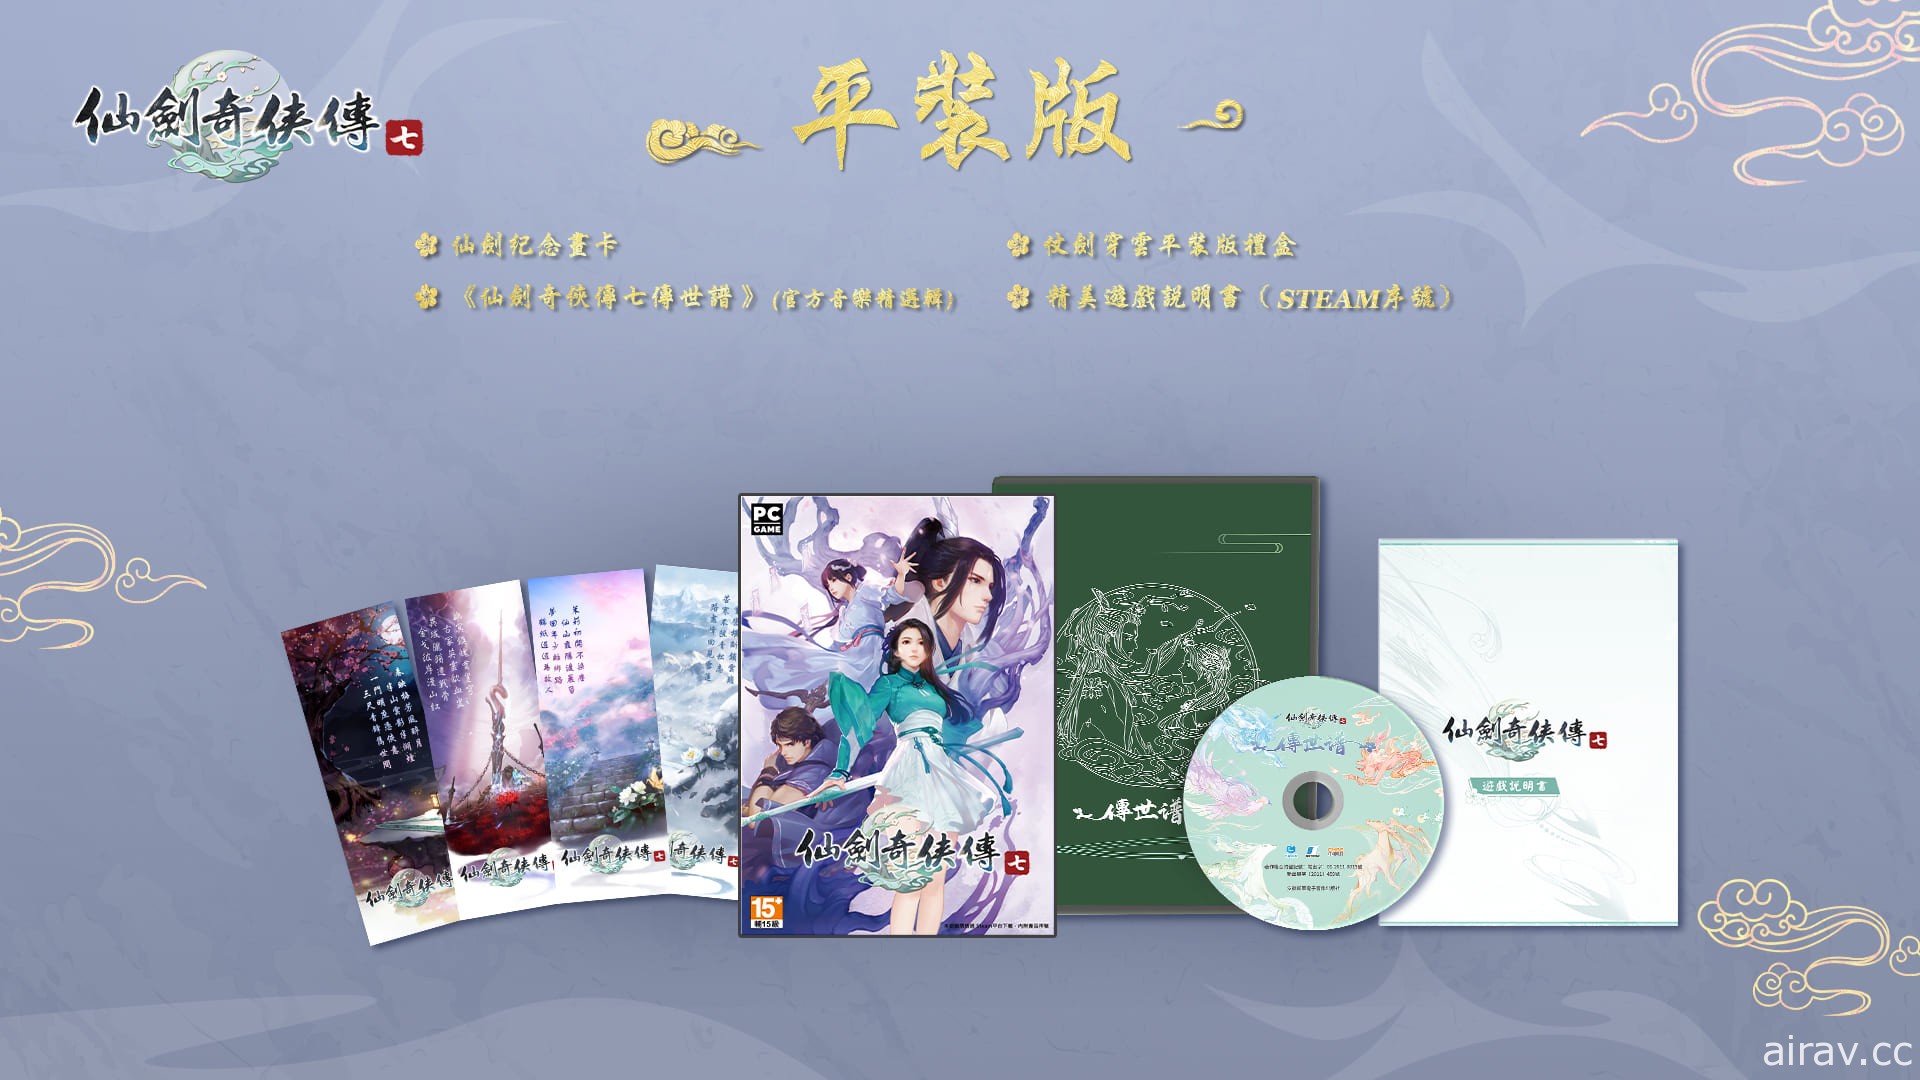 《仙劍奇俠傳七》宣布 10 月 22 日上市 公開繁體中文實體產品內容